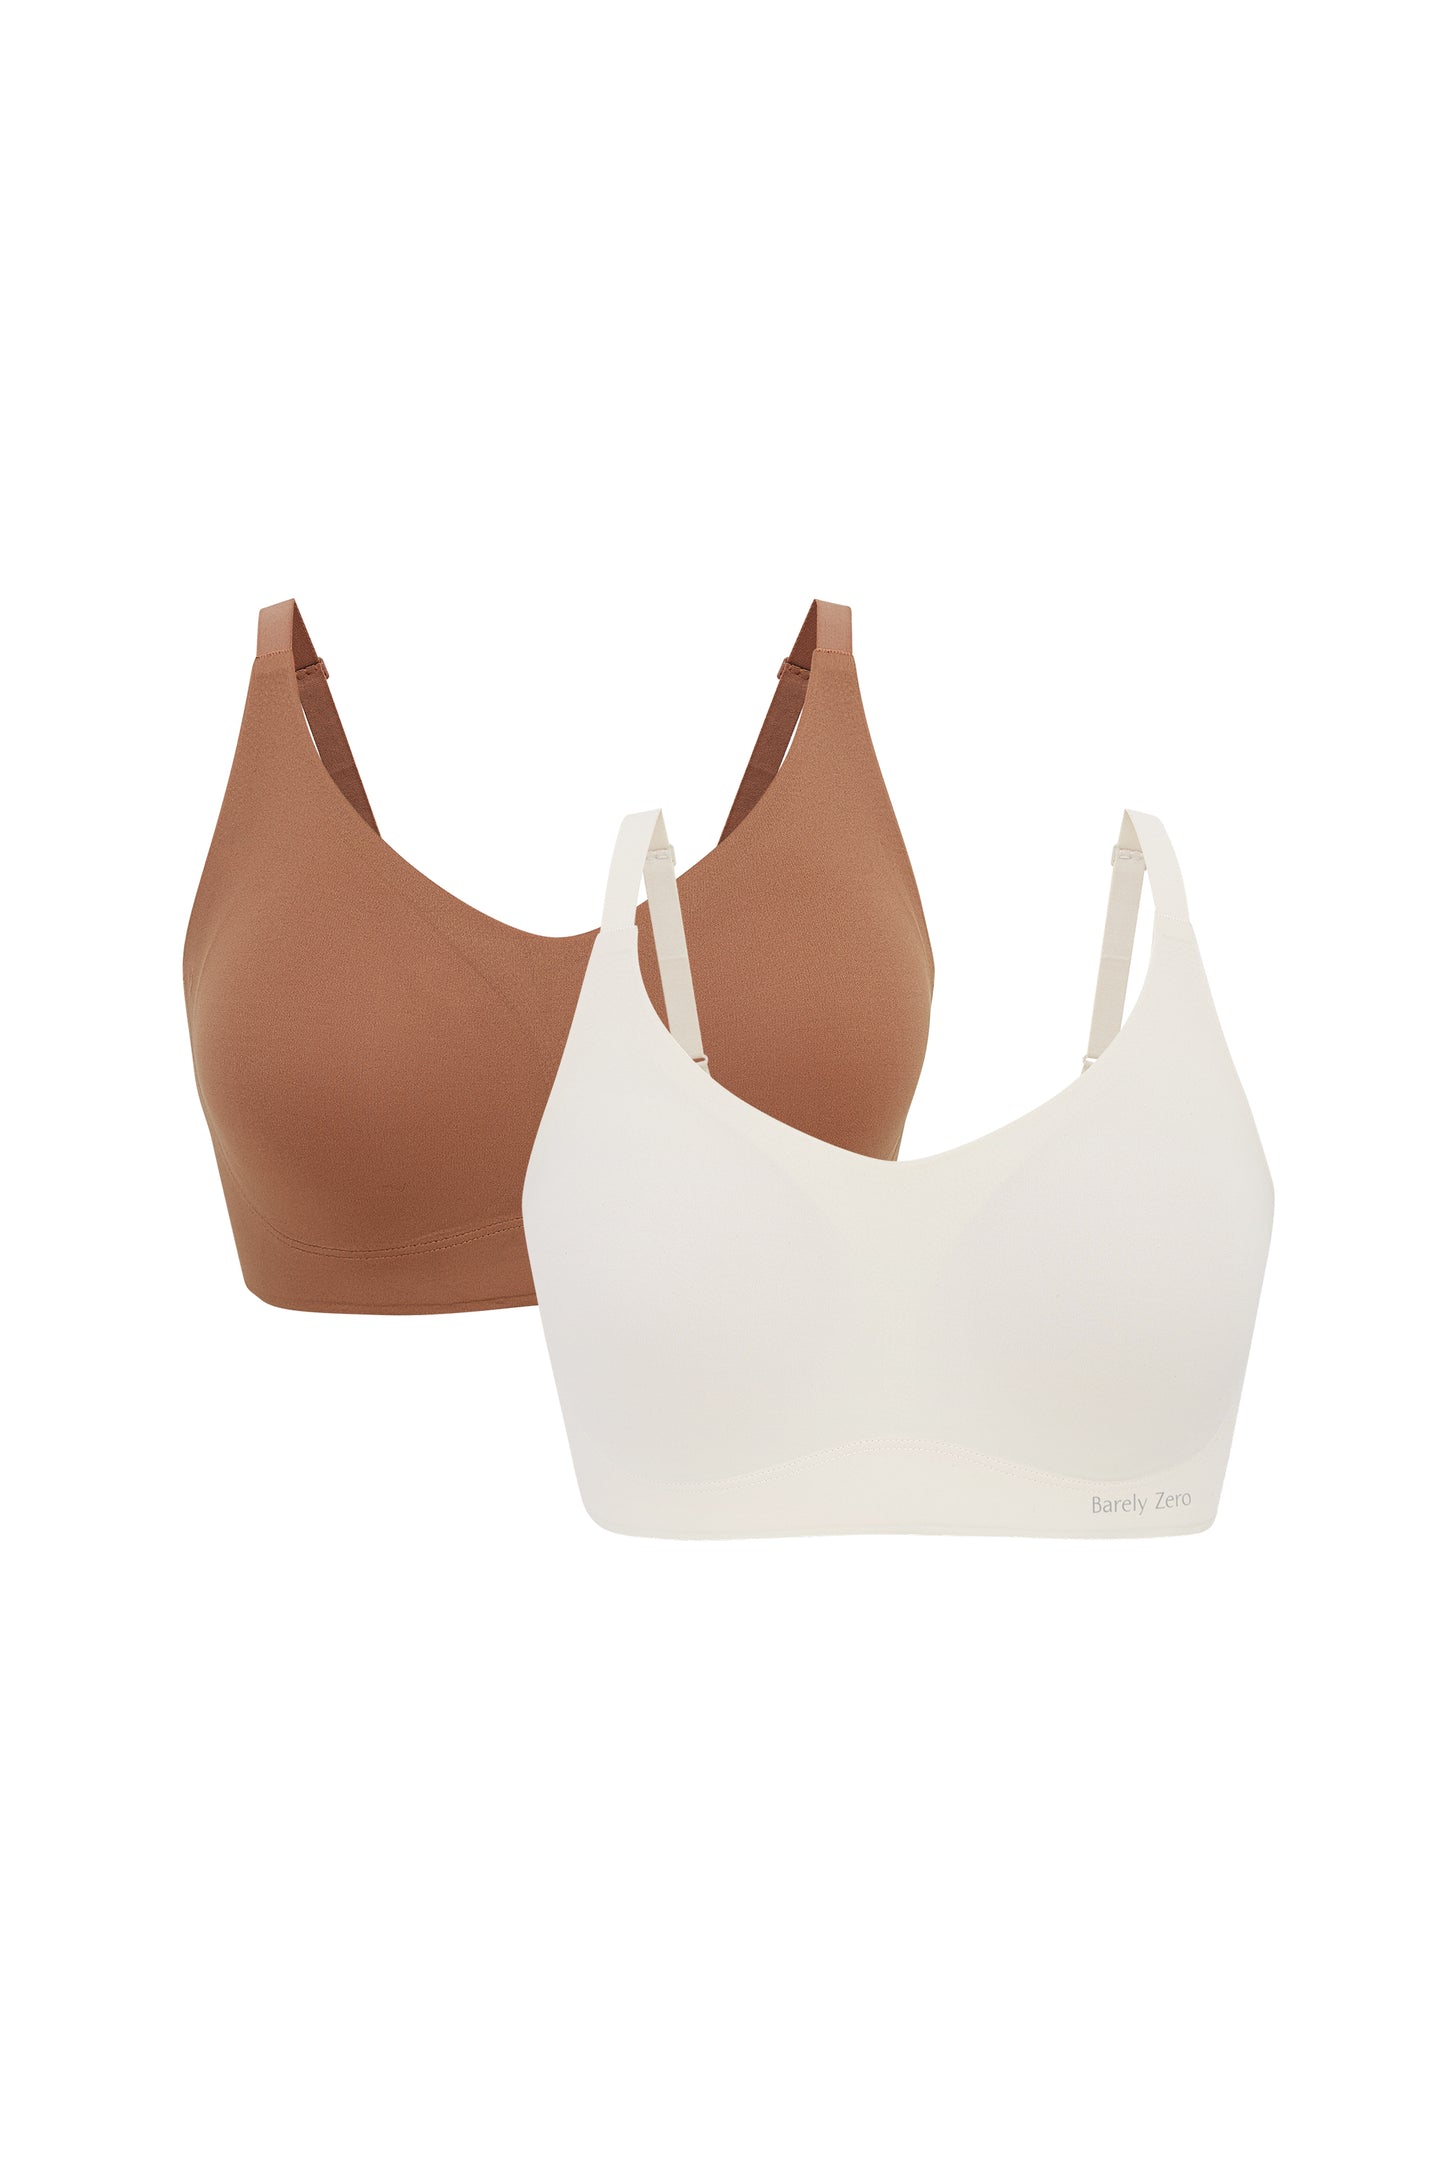 brick color bra and off white bra